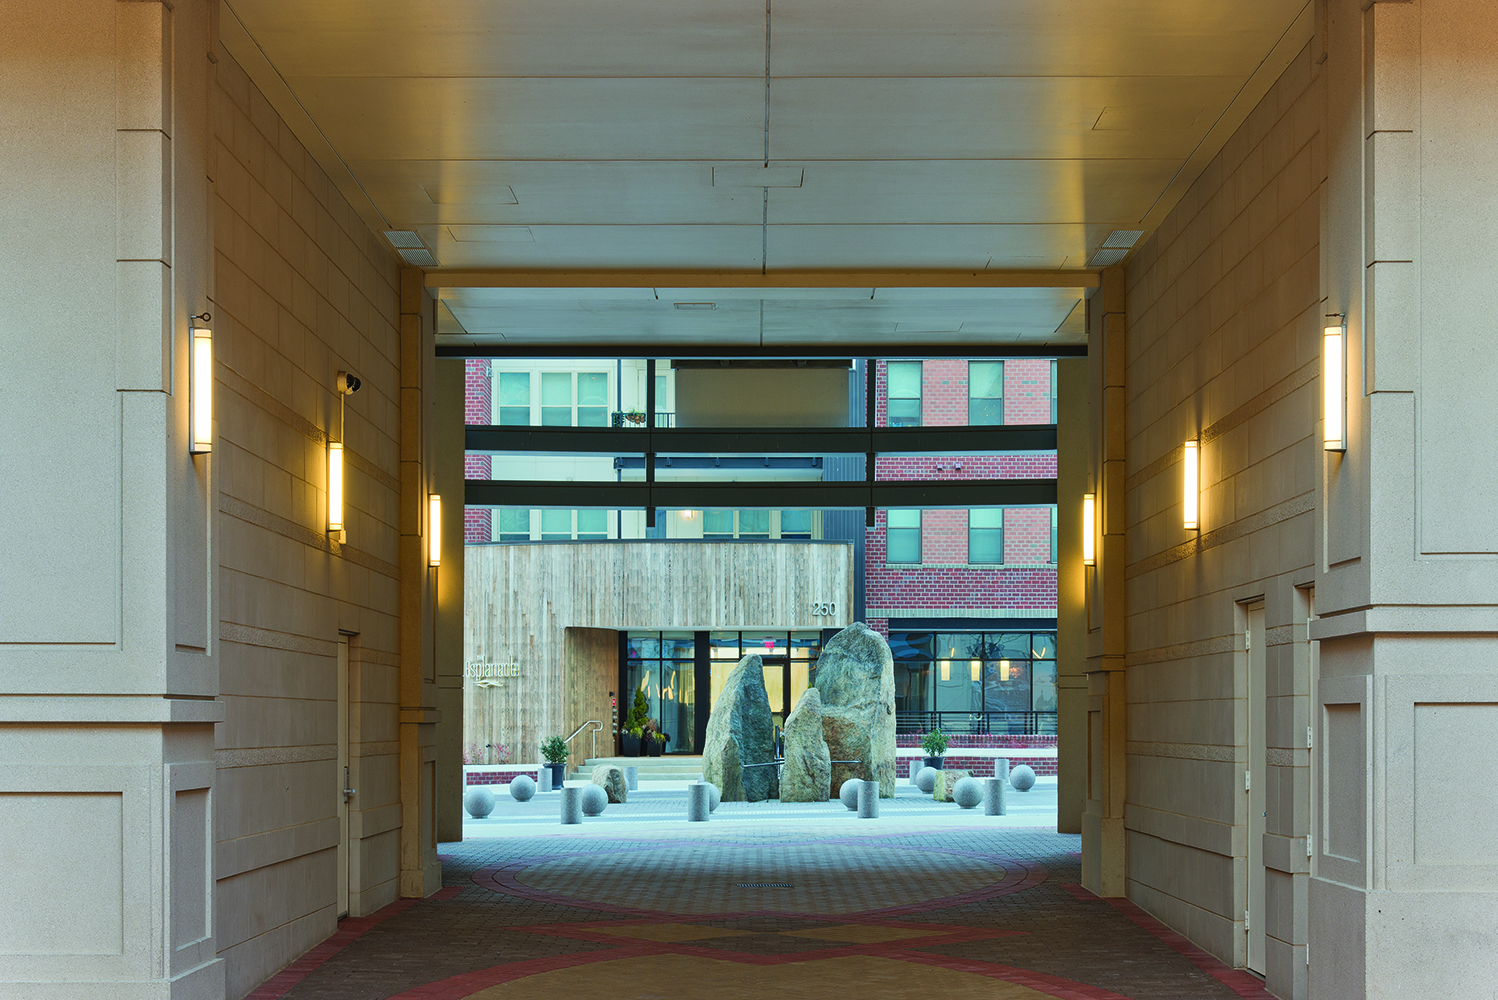 Raven outdoor light fixtures along an exterior passageway between buildings in an outdoor commercial area.